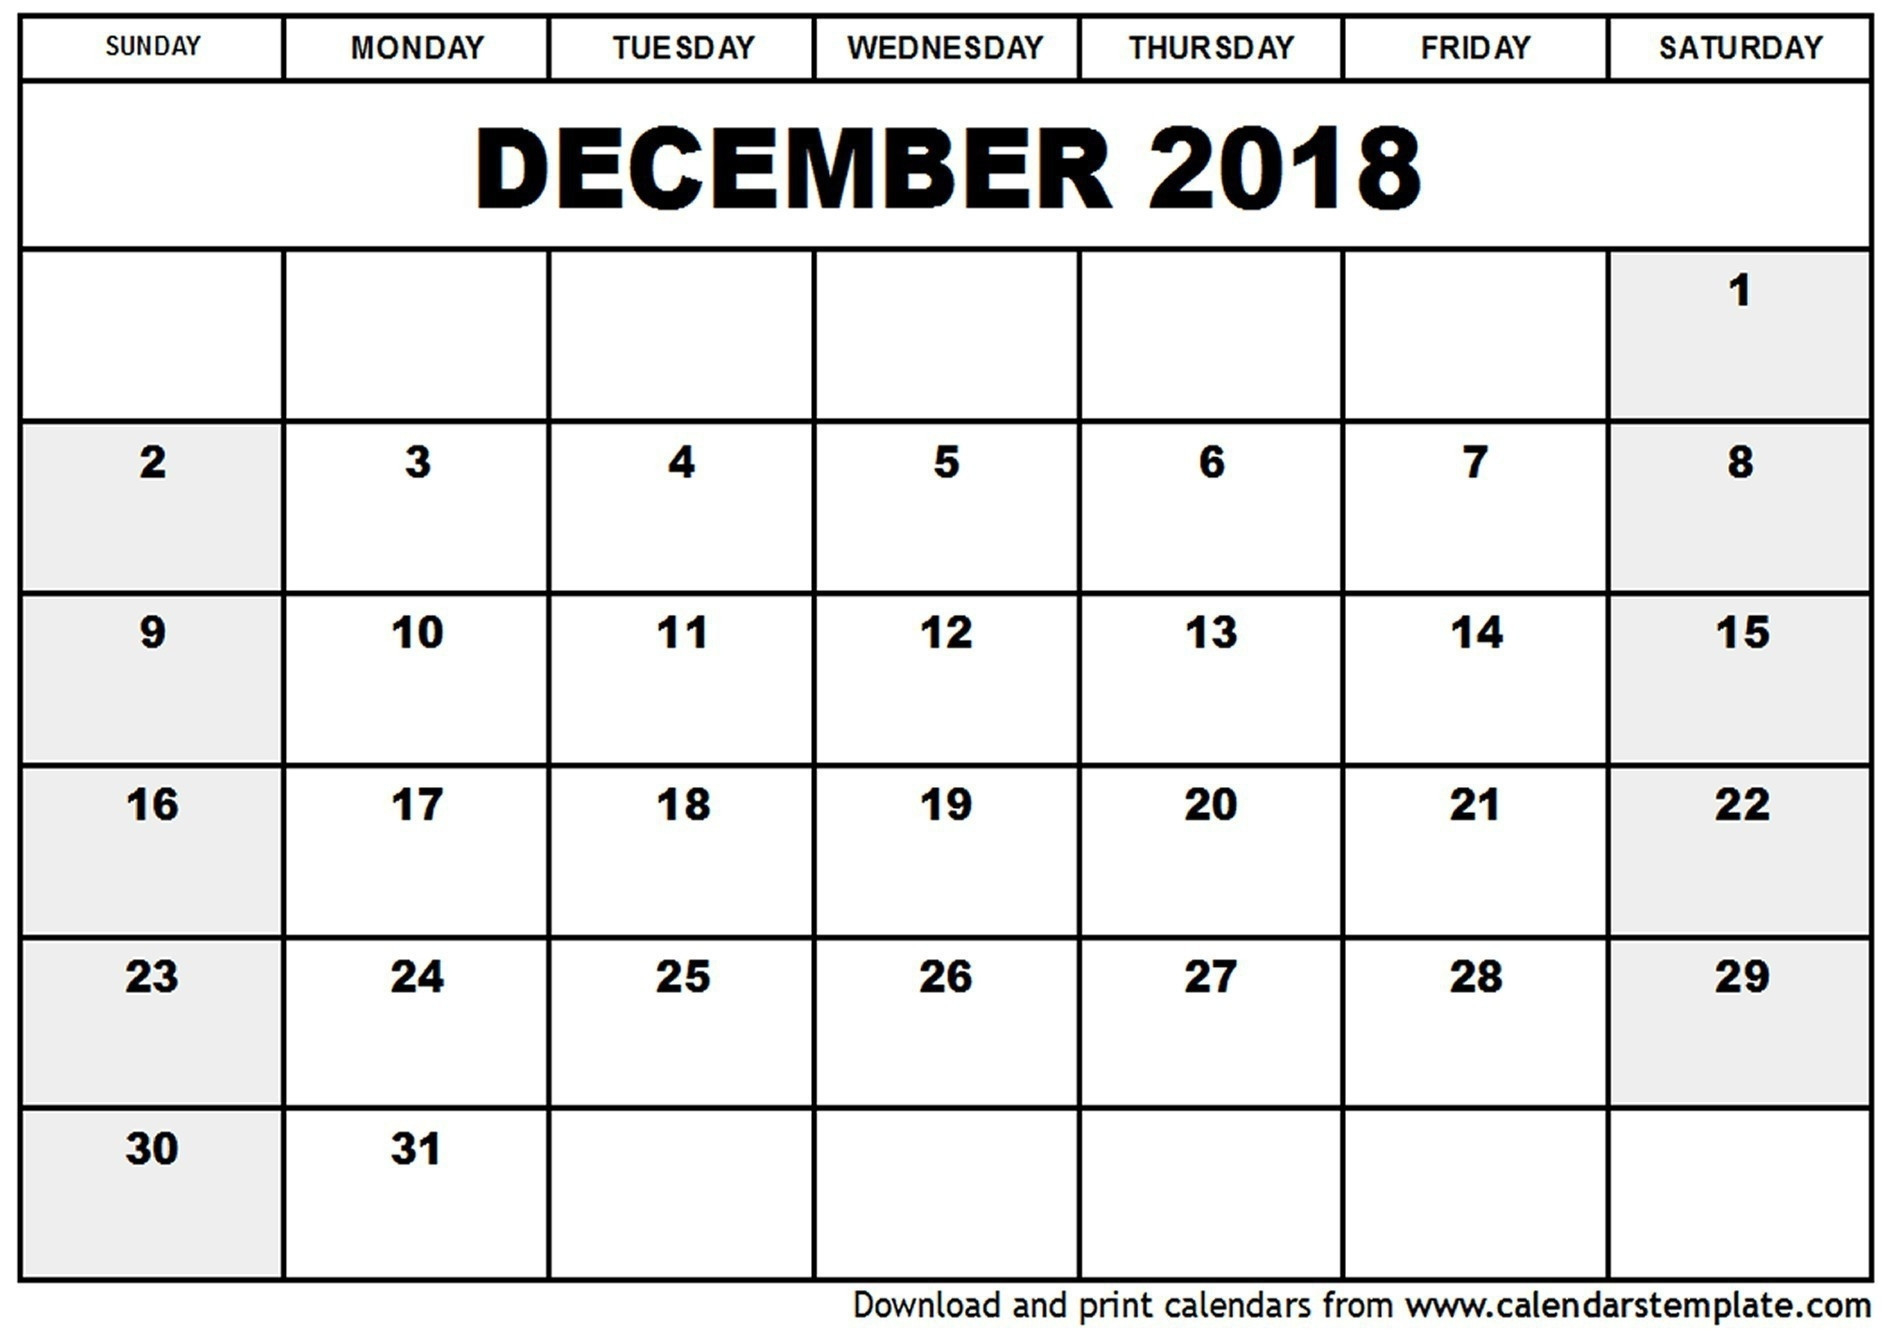 Julian Calendar No Leap Year - Calendar Inspiration Design  Julian Date Calendar For Leap Year